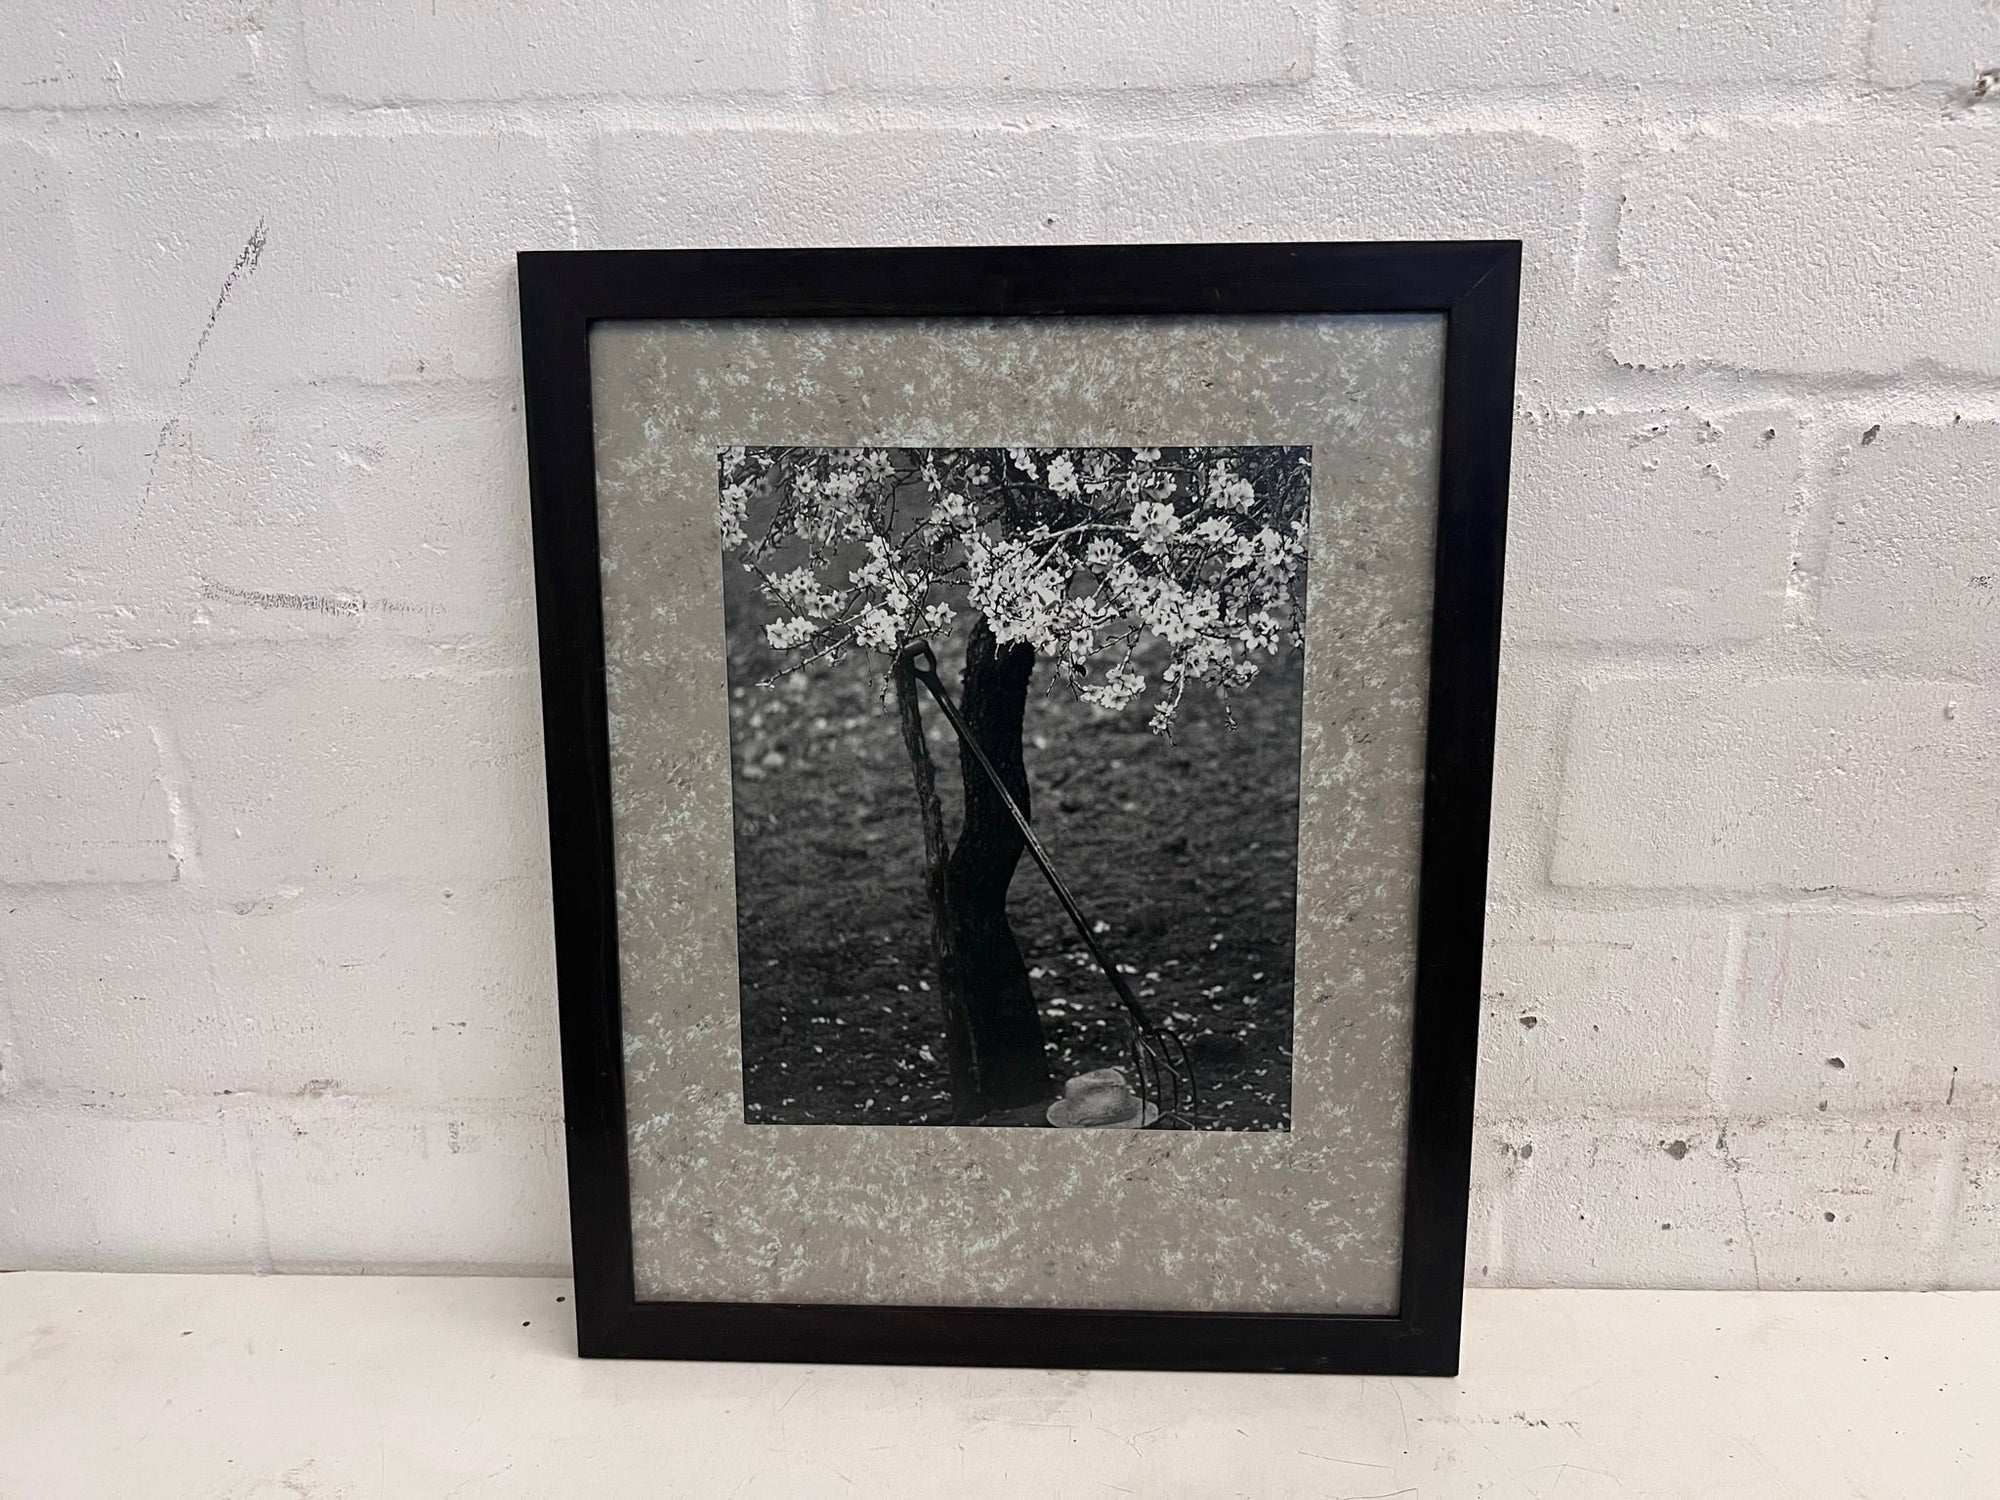 Black and White Cherry Blossom Framed Art 55cm x 45cm